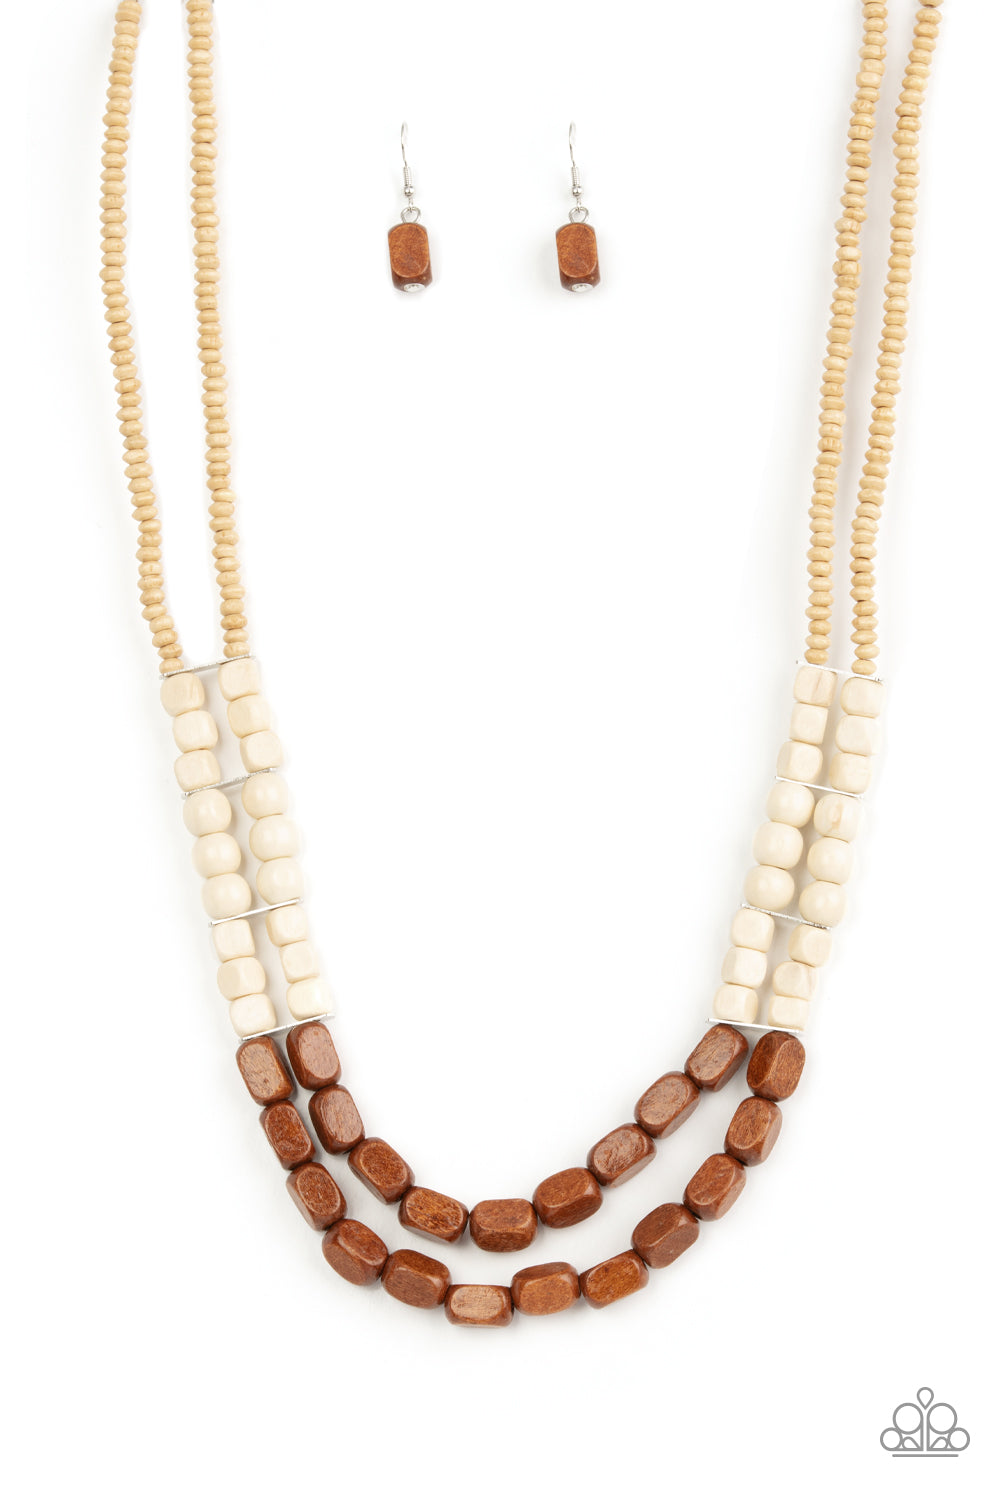 Bermuda Bellhop - Brown wood necklace